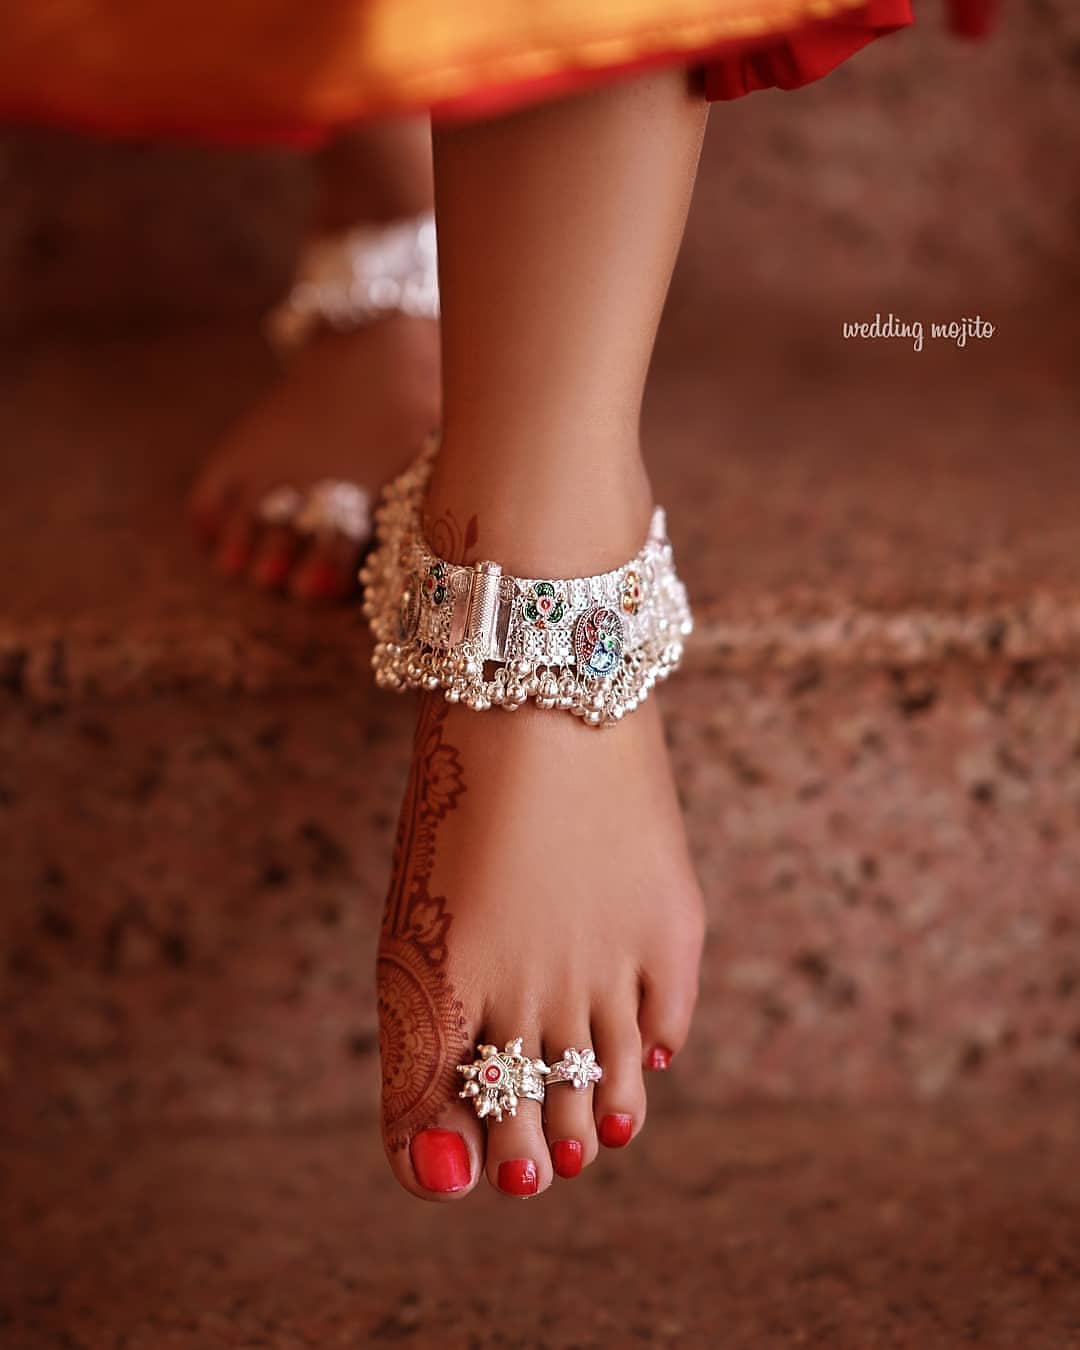 Women Toe Rings : महिलाएं क्यों पहनती हैं बिछिया? जानें इसका धार्मिक और  वैज्ञानिक महत्व | Women Toe Rings Why Women Wear Bichiya Know Its Religious  And Scientific Importance | TV9 Bharatvarsh